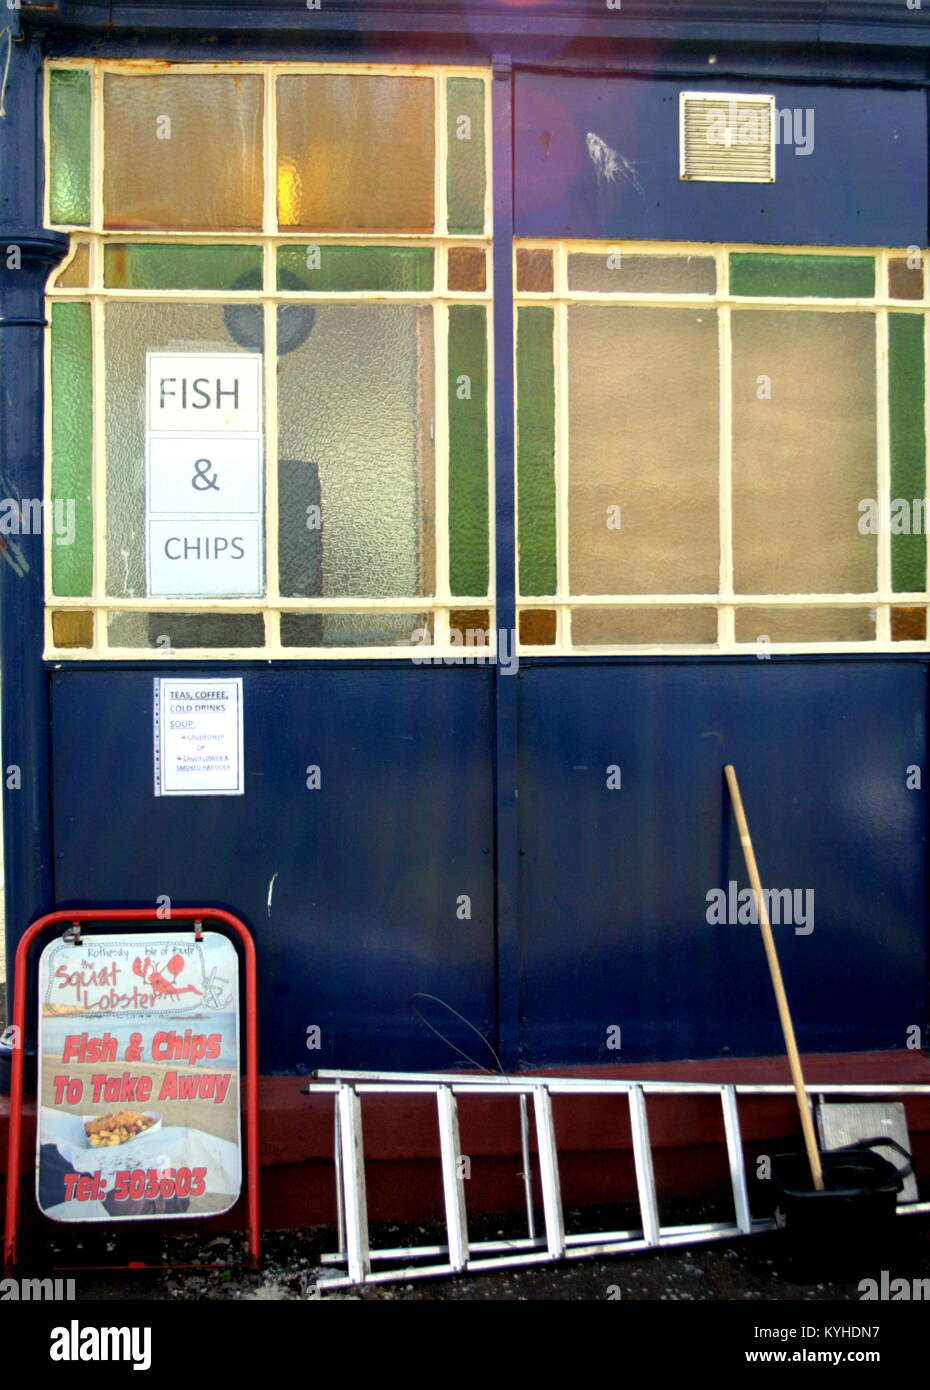 Le squat lobster elogiato dal Sunday Times lato mare pesce e patatine finestra ristorante segno Rothesay, Regno Unito Foto Stock